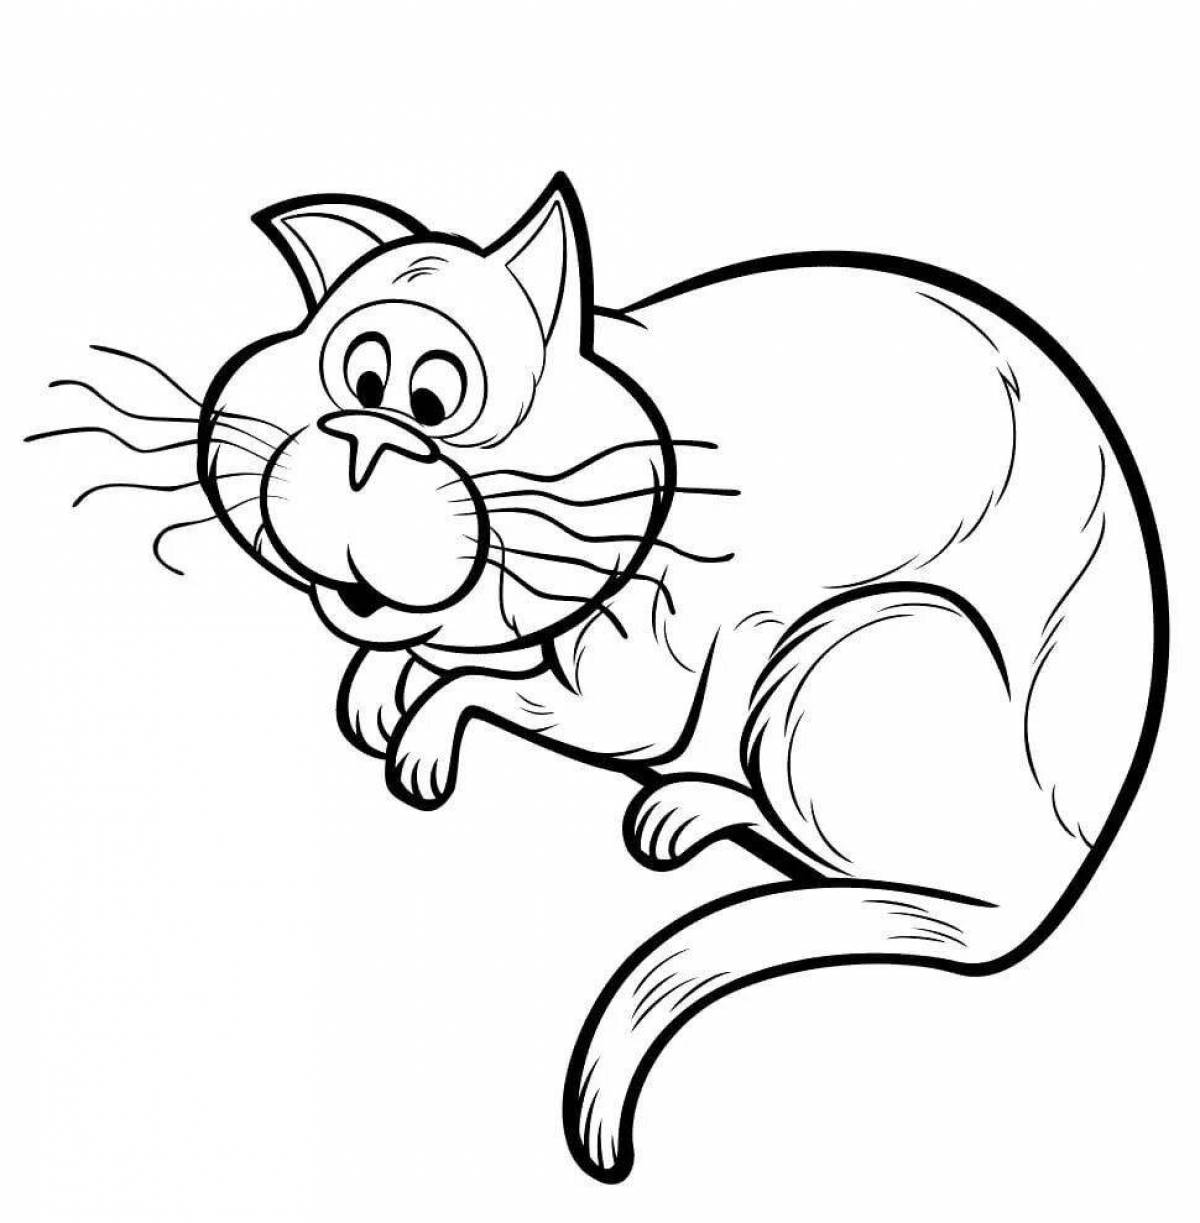 Cartoon cat #4